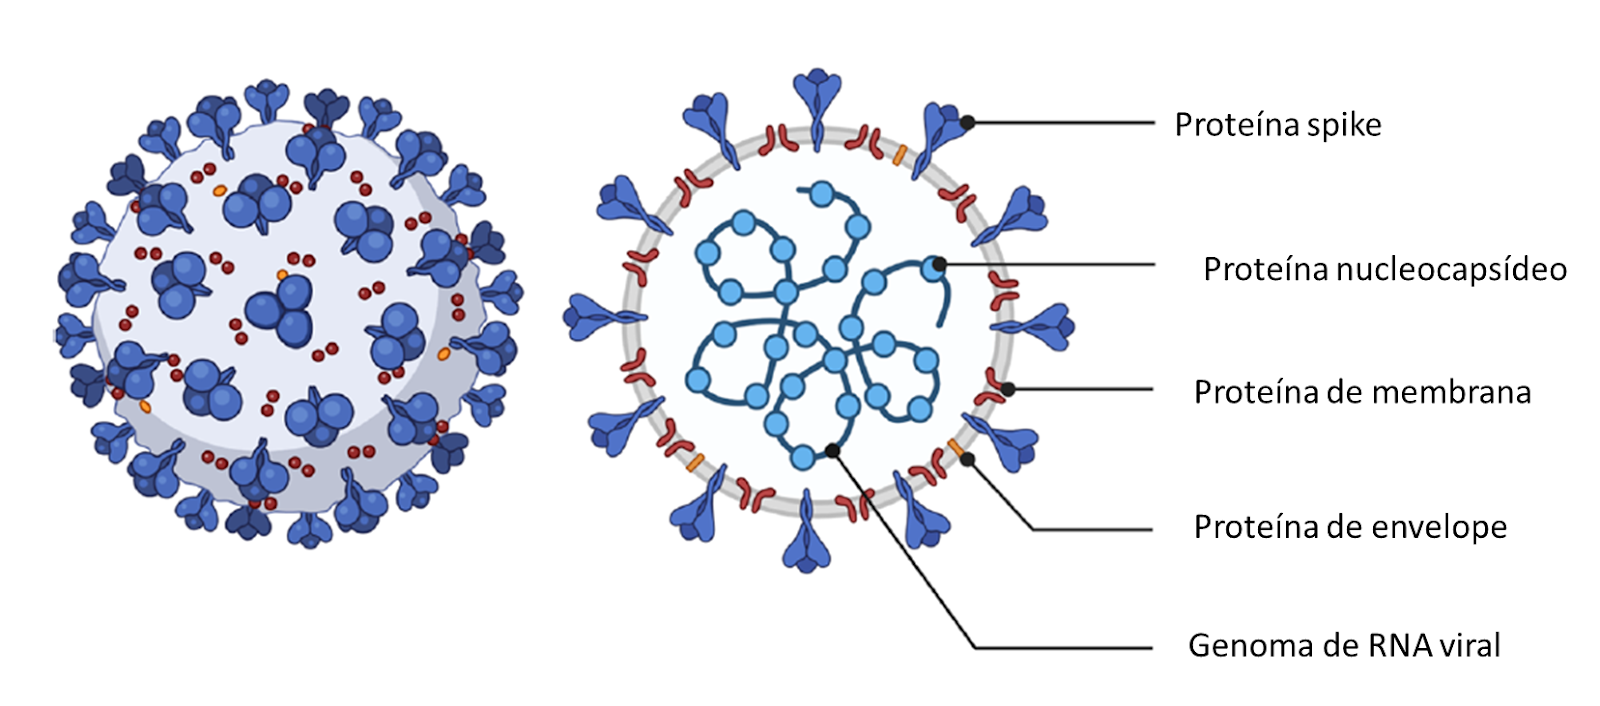 Estrutura biológica do vírus SARS-CoV-2 - avanços biotecnológicos na pandemia